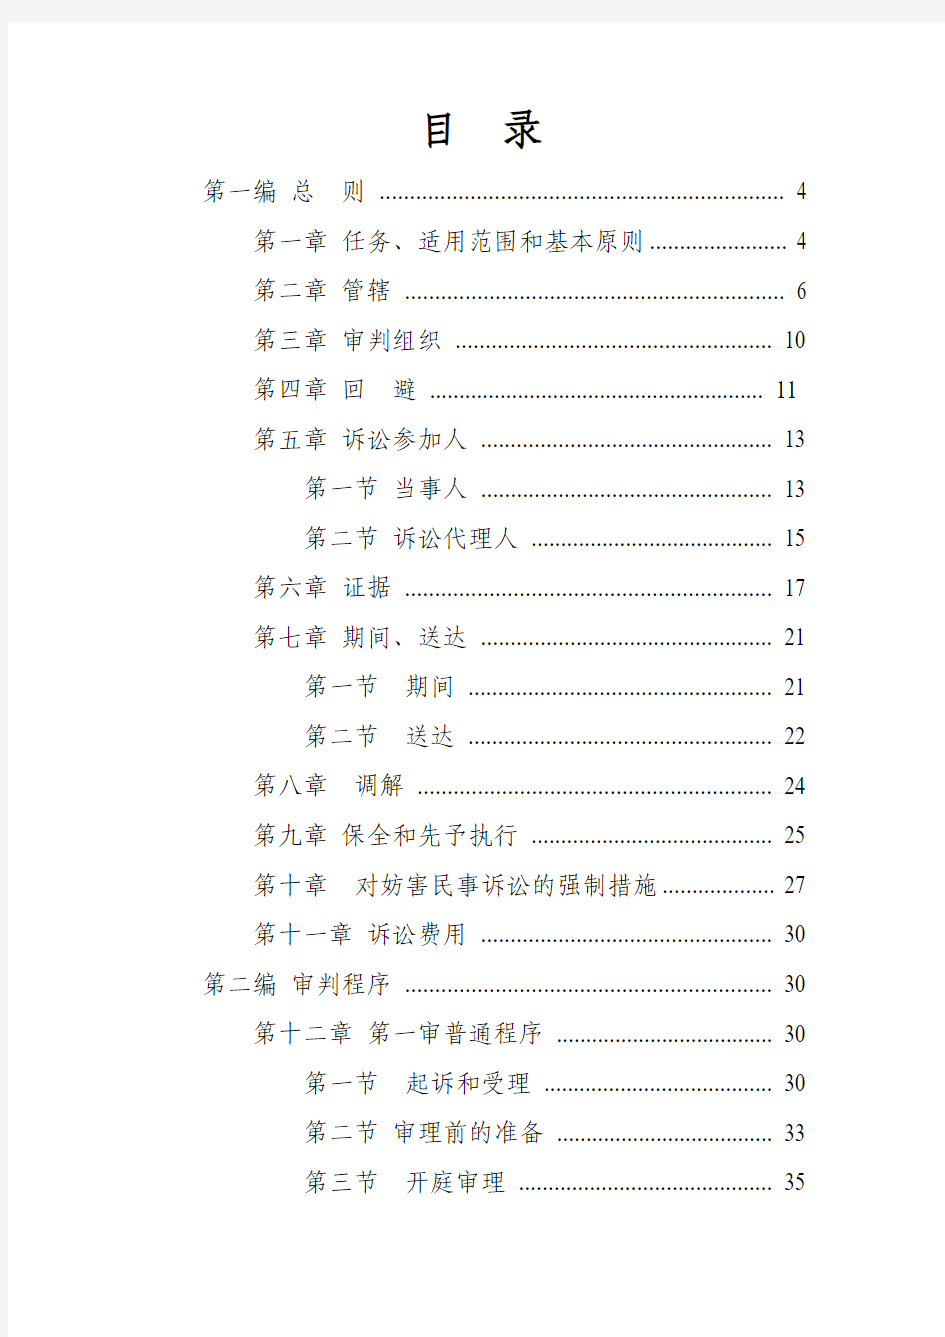 中华人民共和国民事诉讼法2012年修订版(附：修改决定)